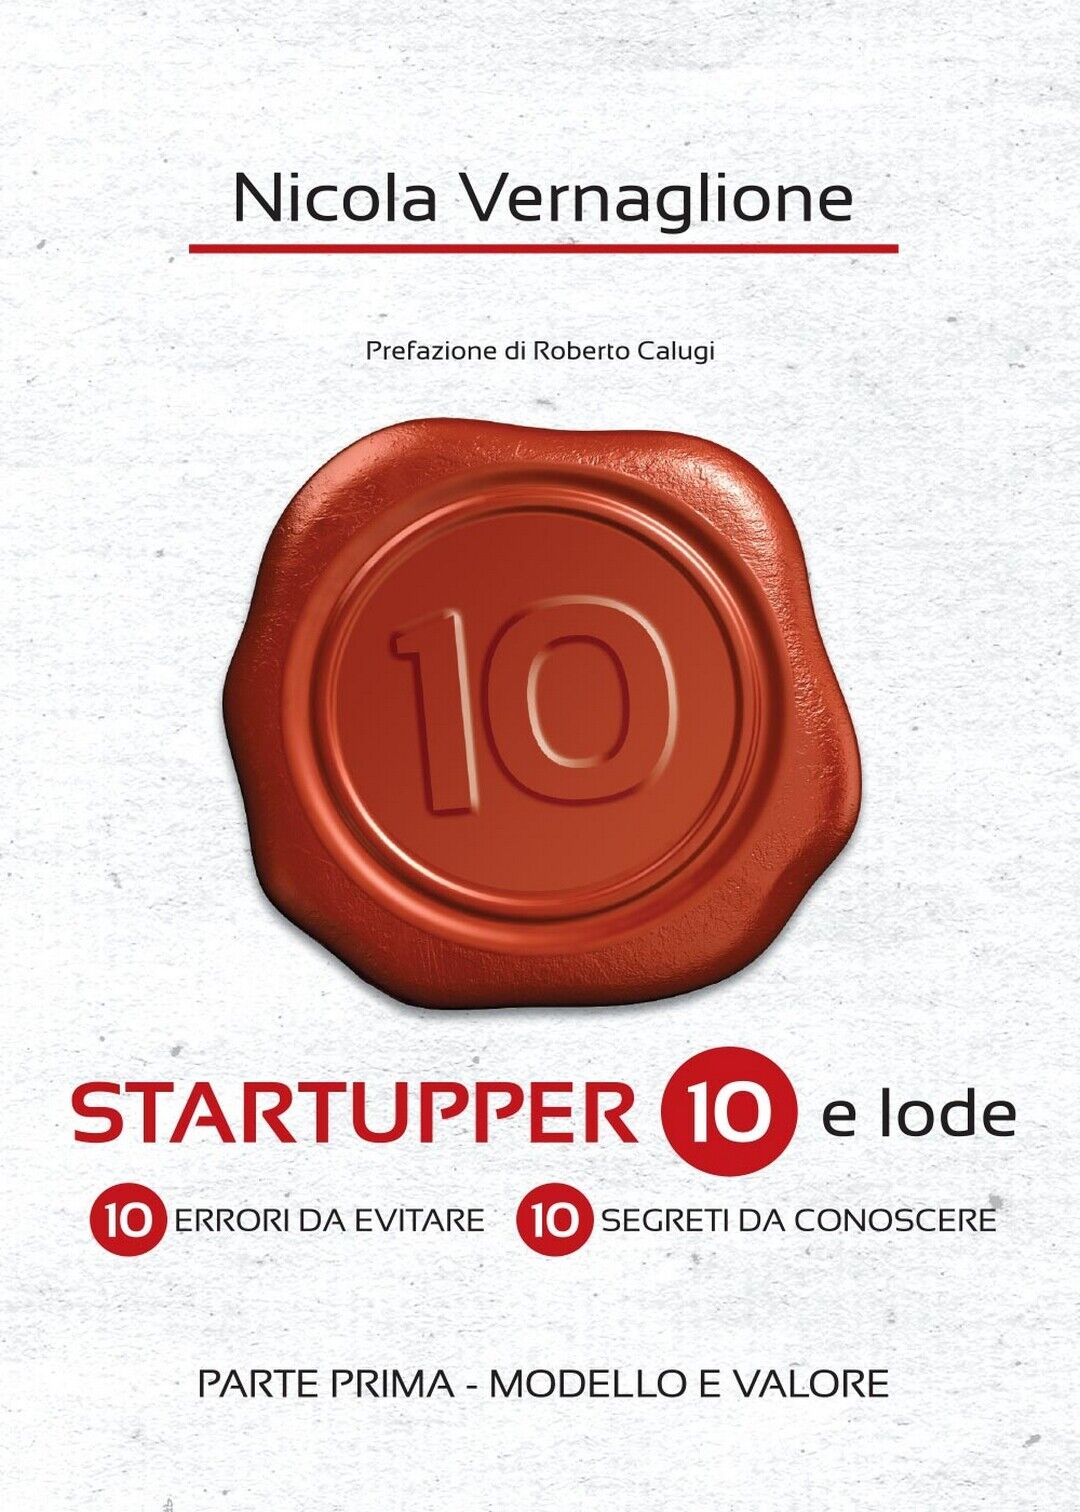 Startupper 10 e lode. 10 errori da evitare. 10 segreti da conoscere. PARTE PRIMA libro usato